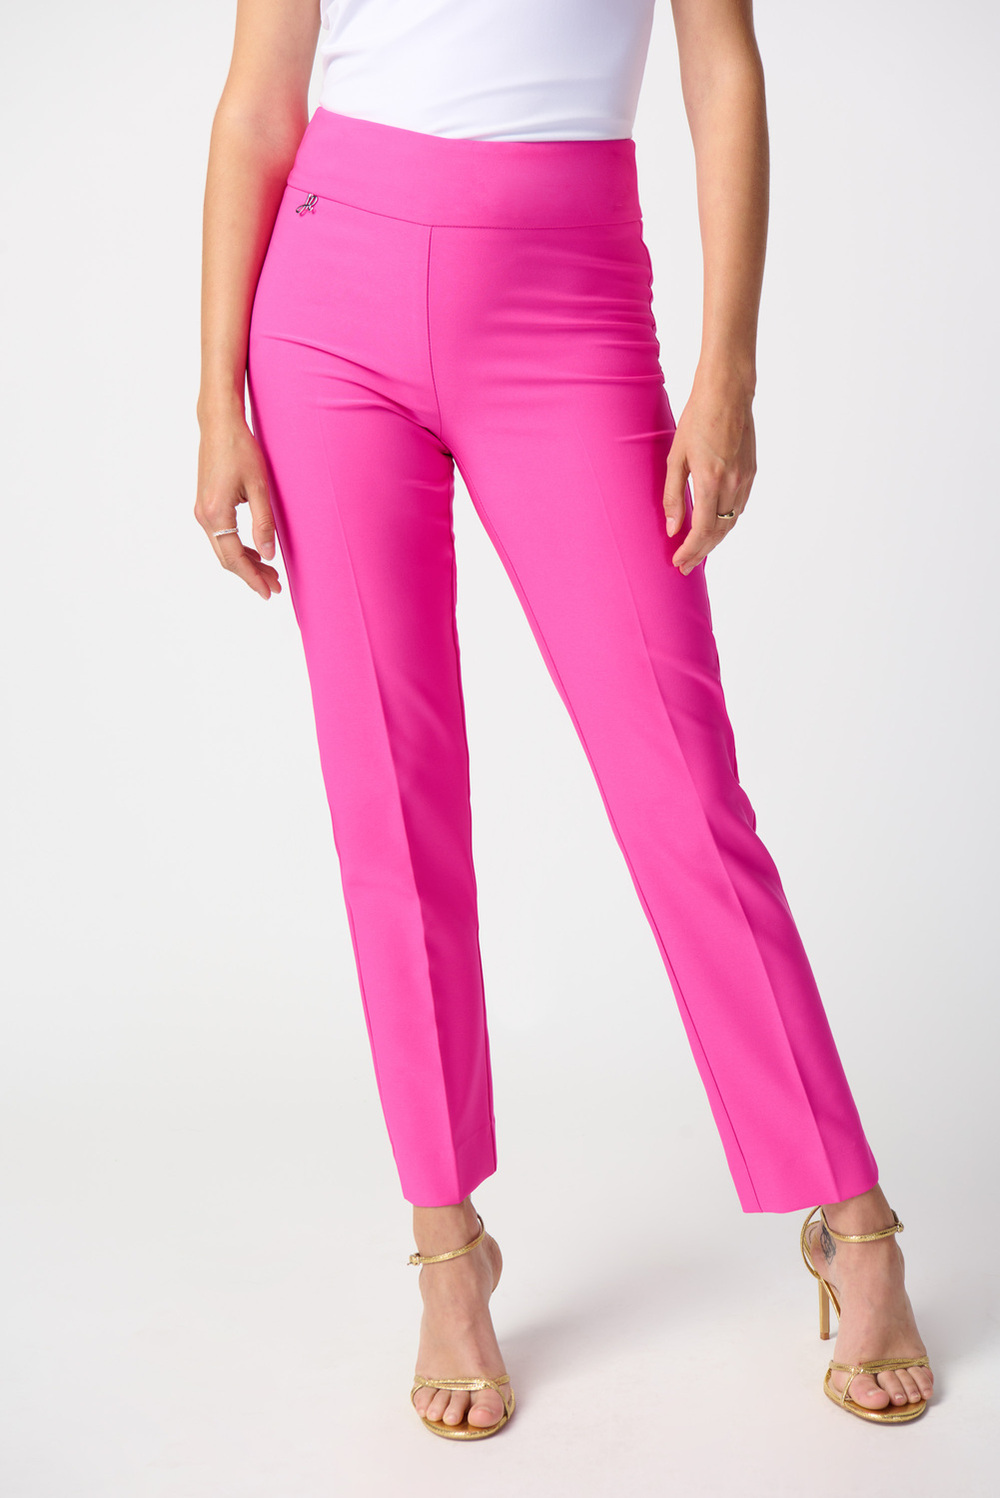 Pantalon 7/8 à plis modèle 241231. Ultra Pink